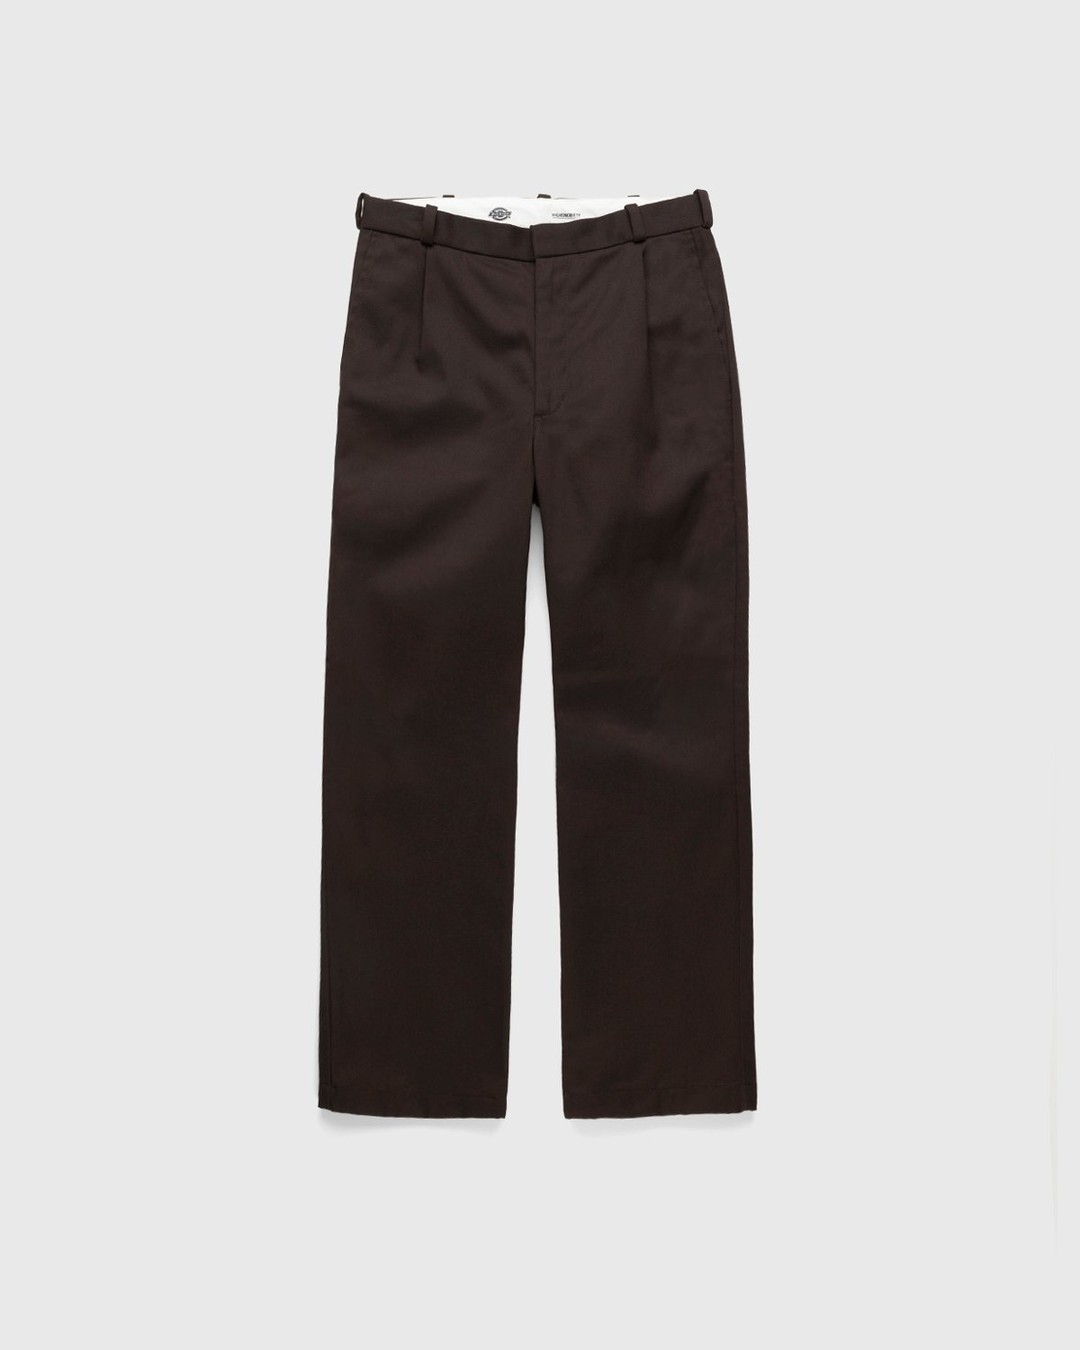 Highsnobiety x Dickies – Pleated Work Pants Dark Brown - Pants - Brown - Image 1